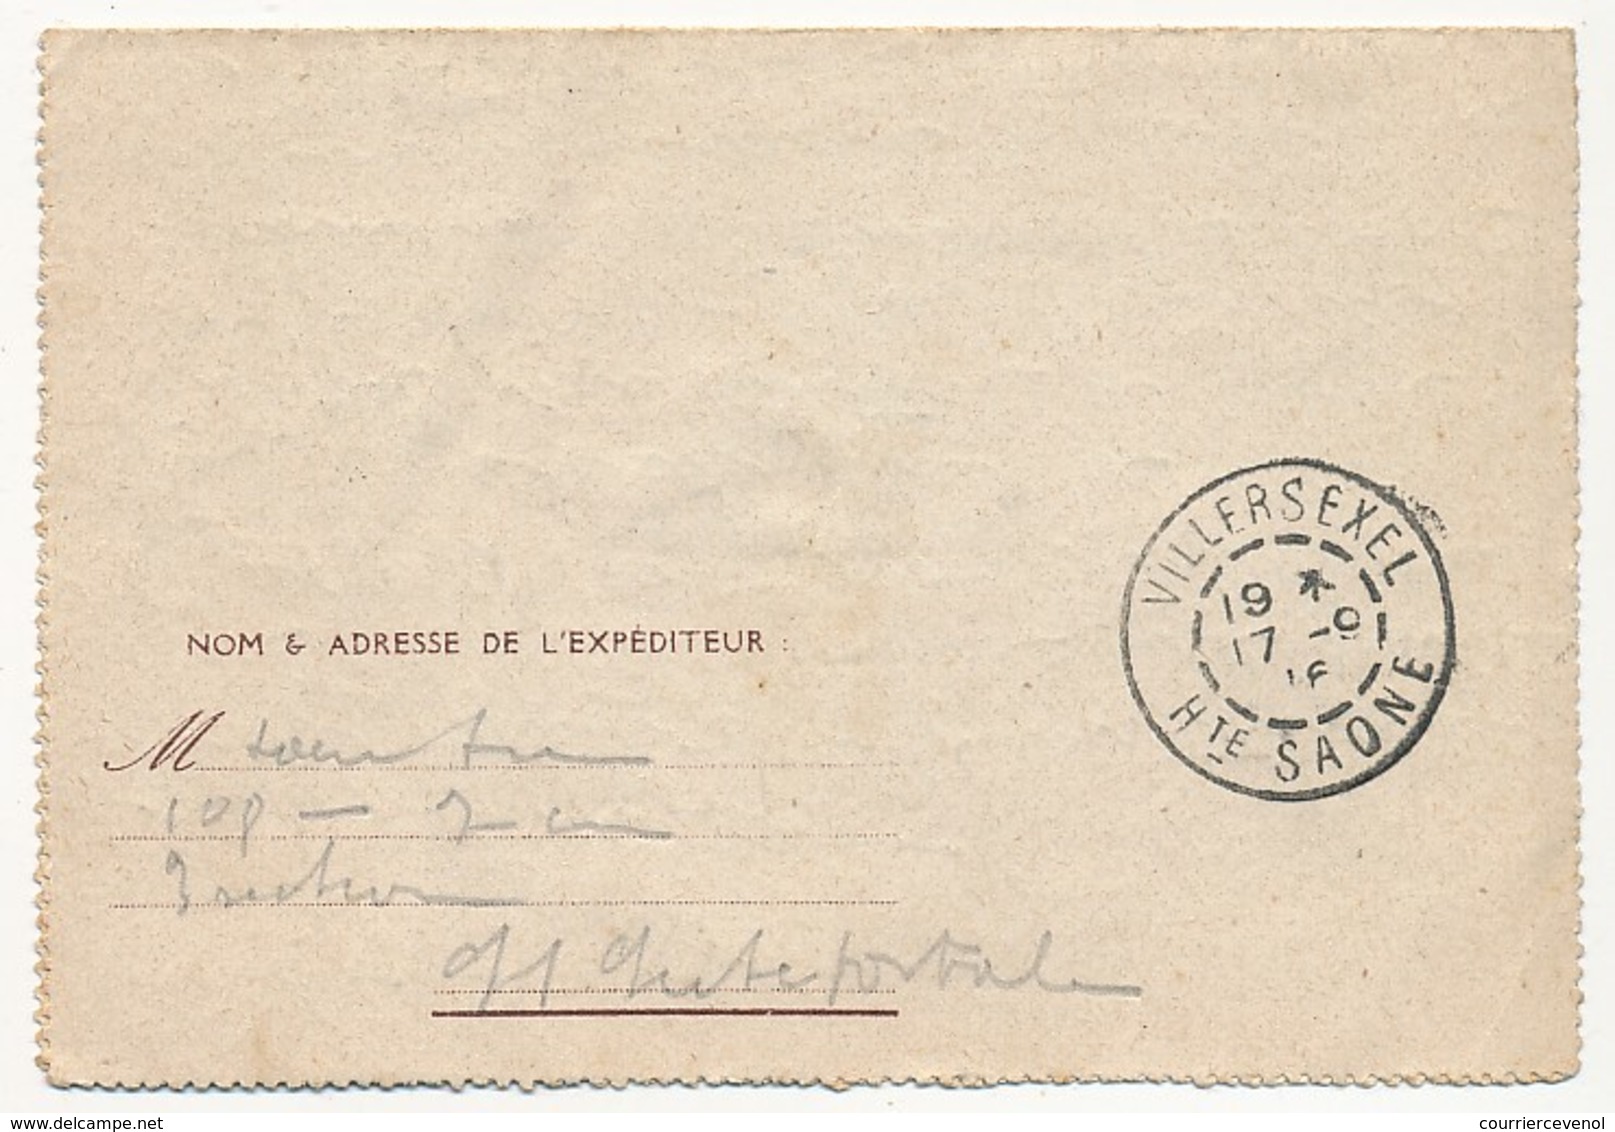 Franchise Militaire - Carte-lettre De L'Espérance - Simili Joffre - Nos Diables Bleus (La Charge) - 1916 - Storia Postale